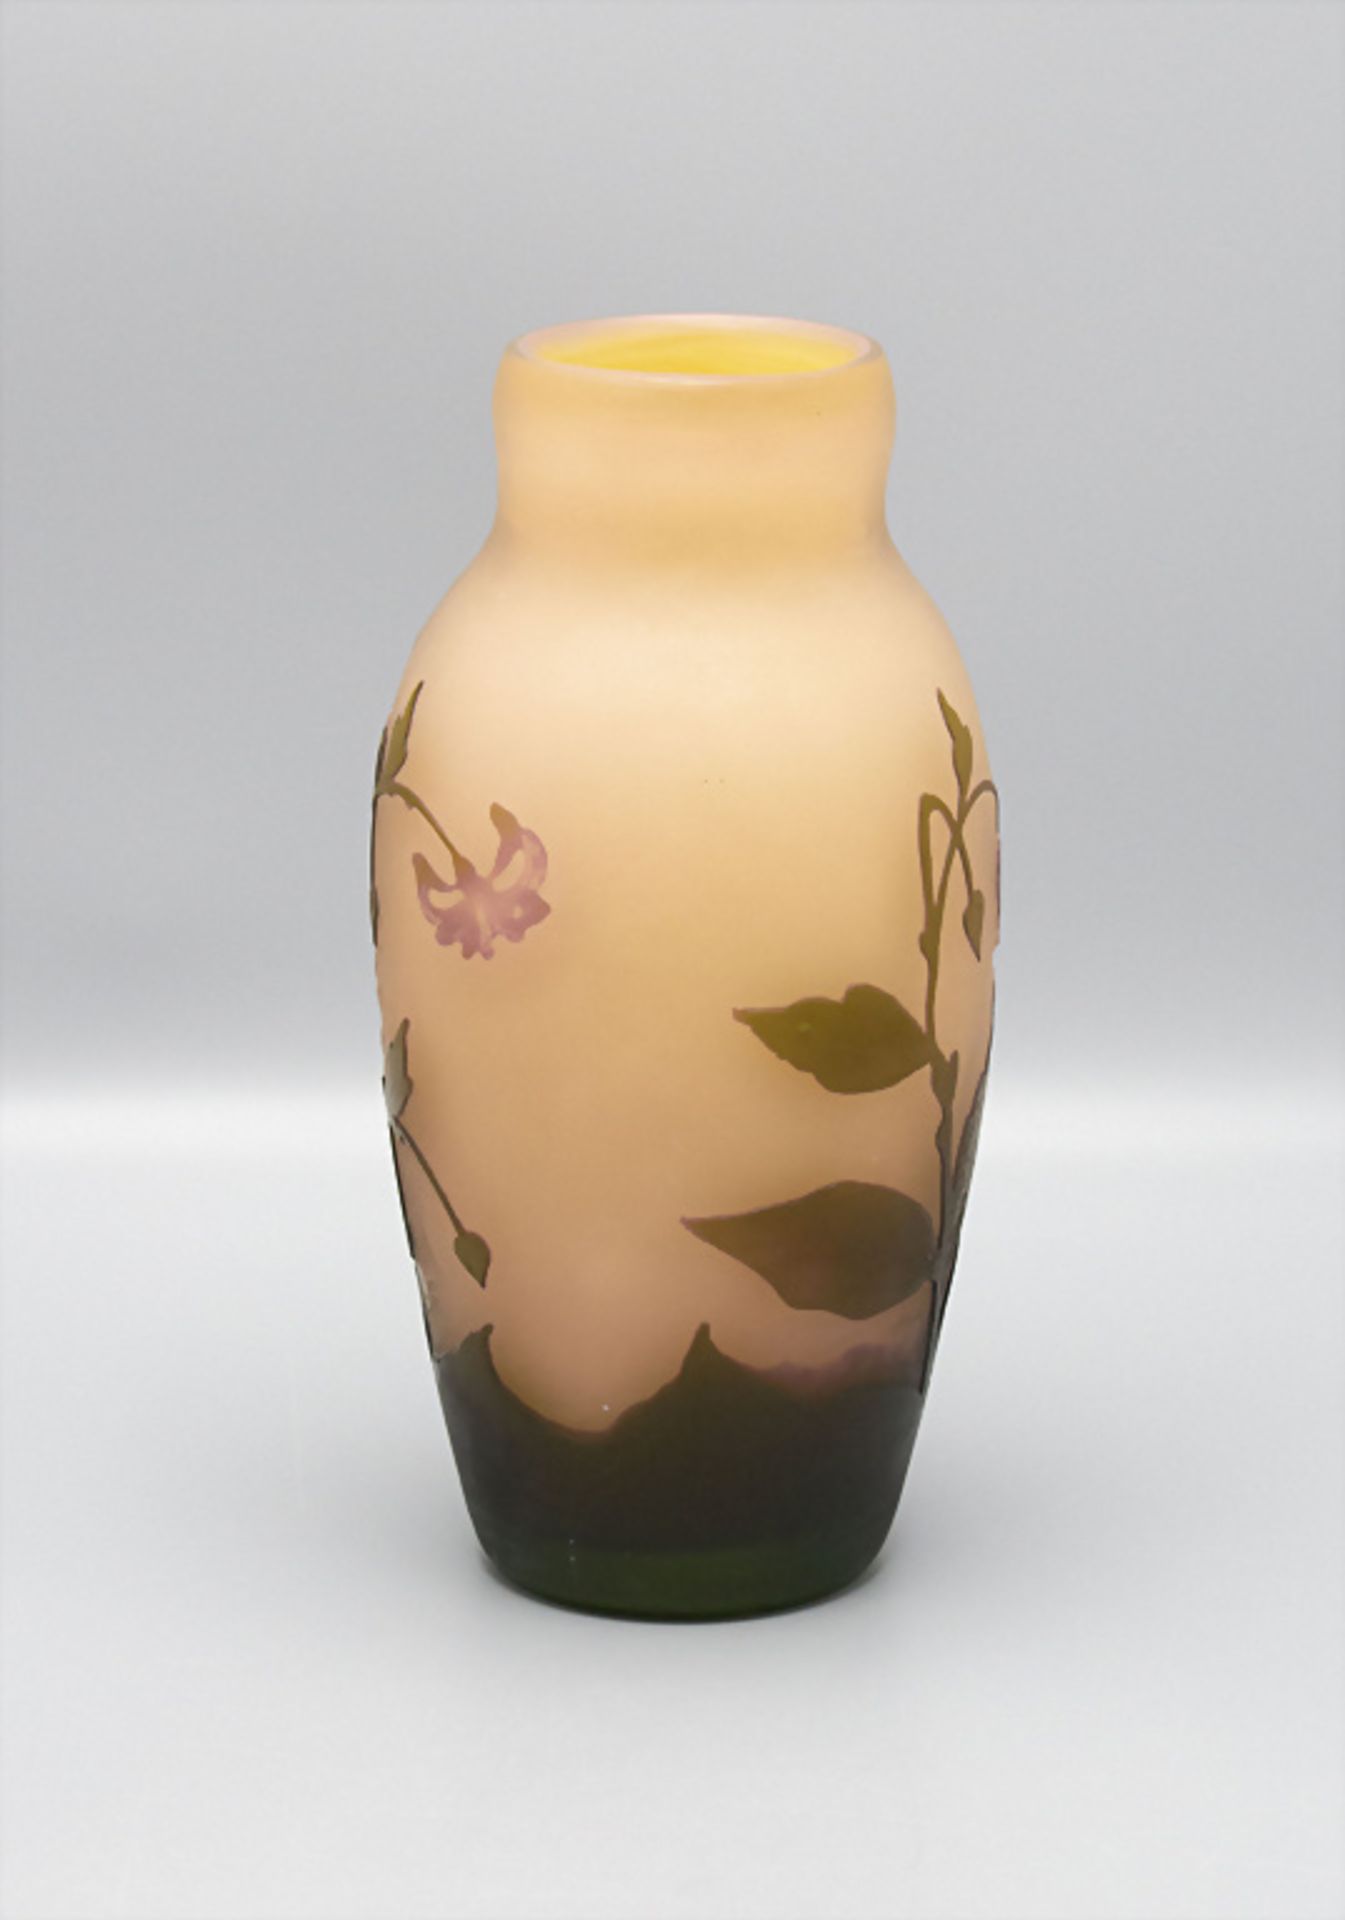 Jugendstil Vase, Arsall, Vereinigte Lausitzer Glaswerke AG, Weisswasser, 1921 - Image 3 of 6